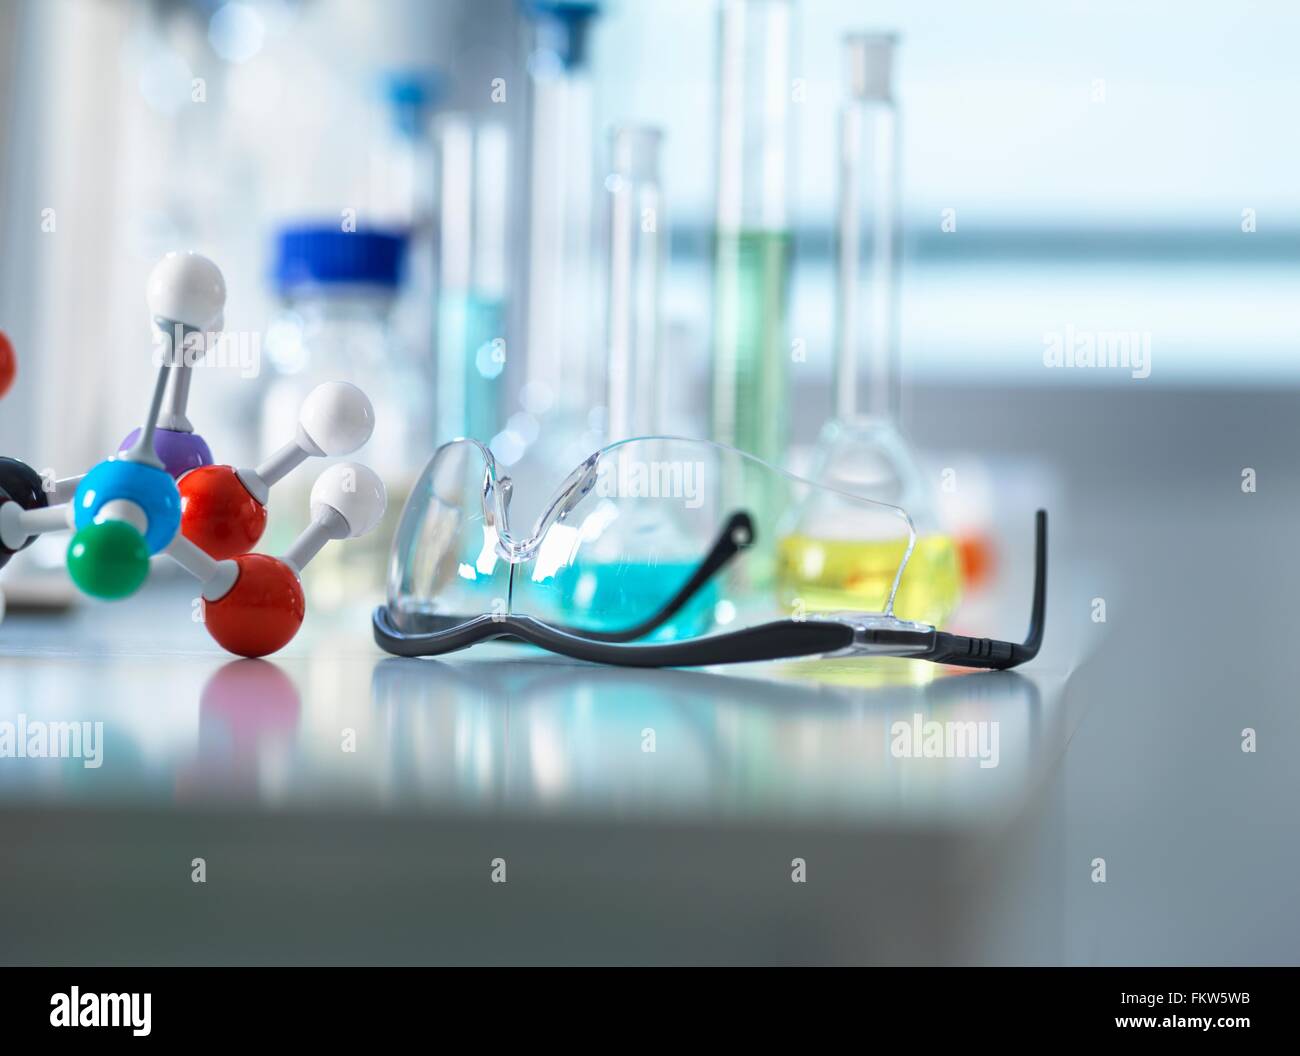 Occhiali di sicurezza e modello molecolare sul banco da laboratorio, apparecchiature scientifiche in background Foto Stock